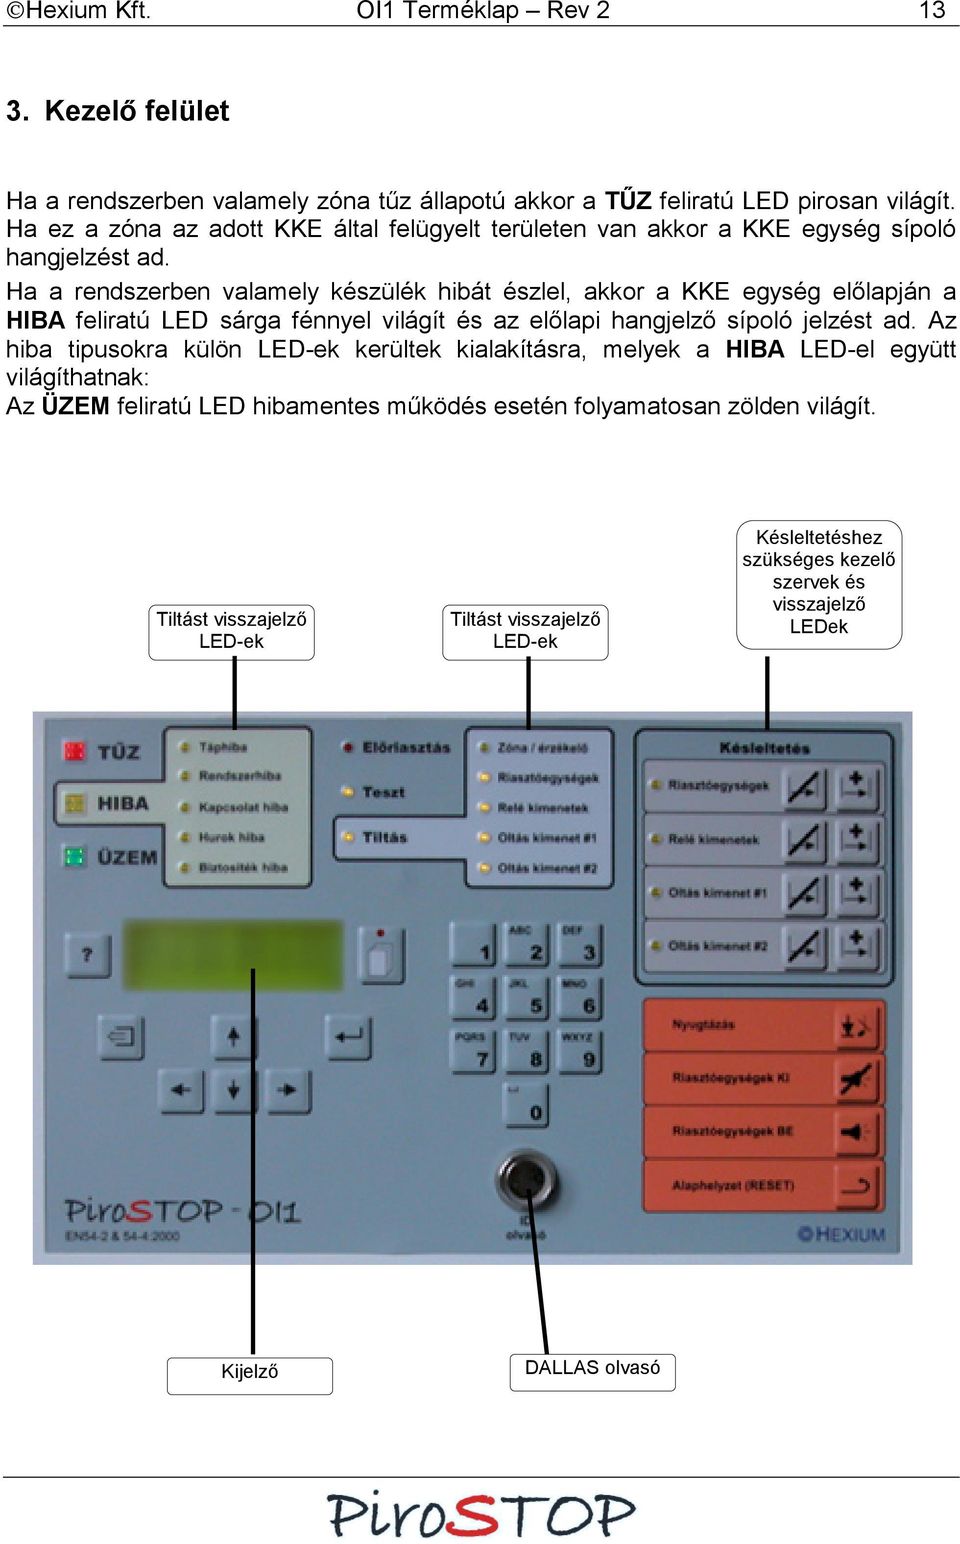 Ha a rendszerben valamely készülék hibát észlel, akkor a KKE egység előlapján a HIBA feliratú LED sárga fénnyel világít és az előlapi hangjelző sípoló jelzést ad.